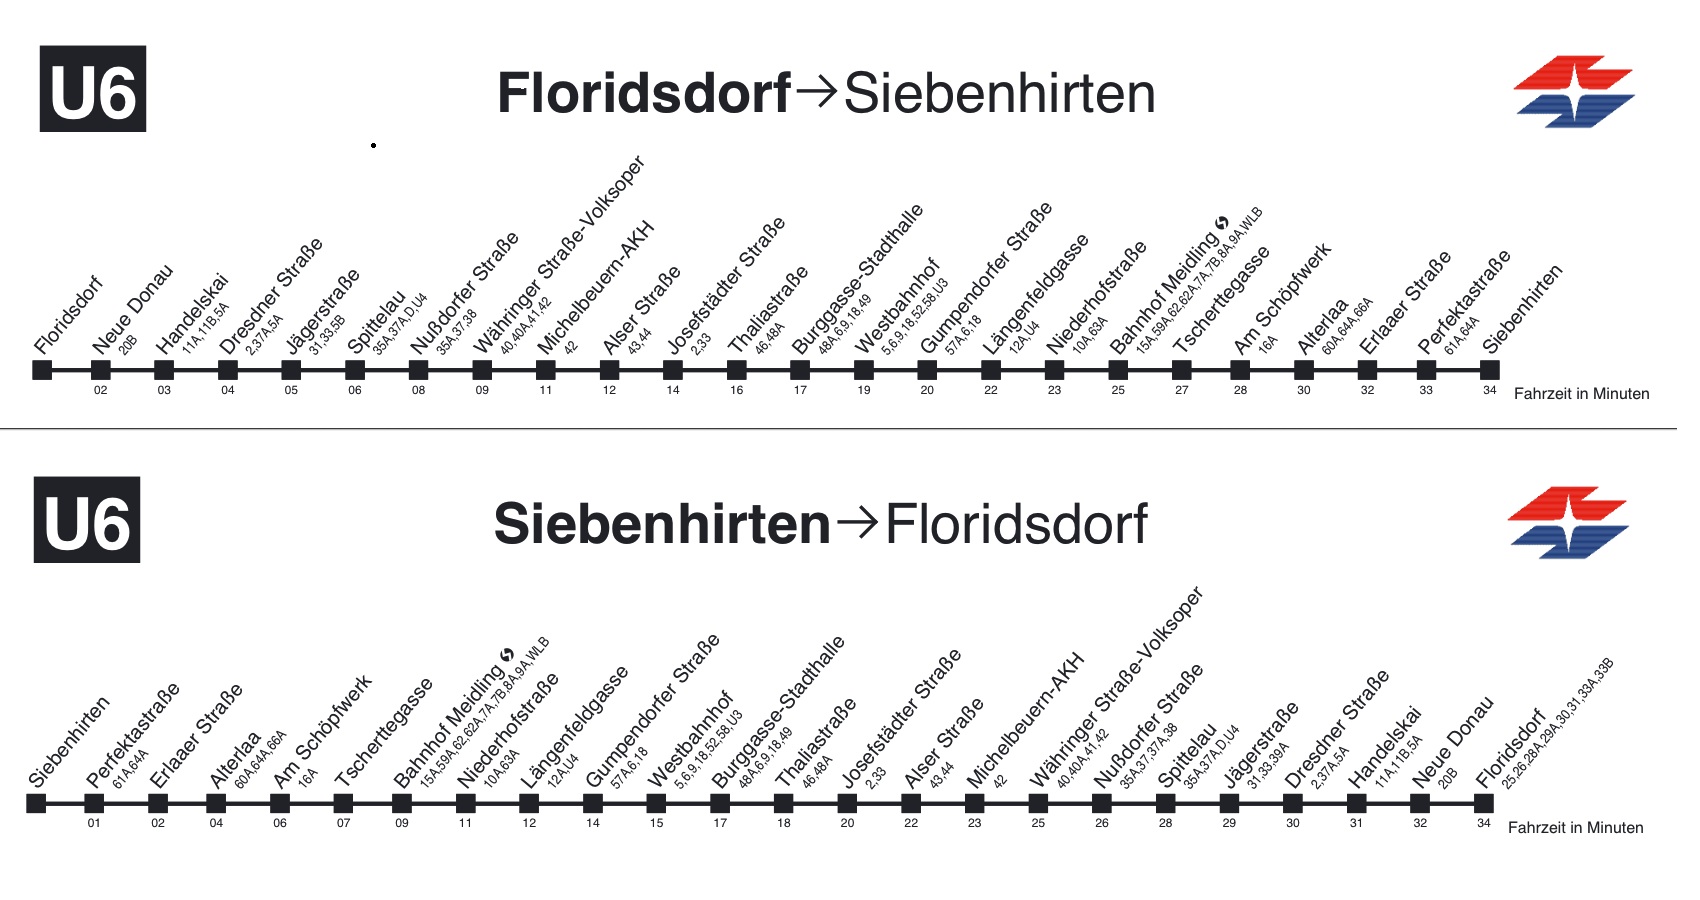 U Bahn Fahrplan der U6 in Wien mit allen Stationen, Fahrzeiten von Floridsdorf nach Siebenhirten und retour